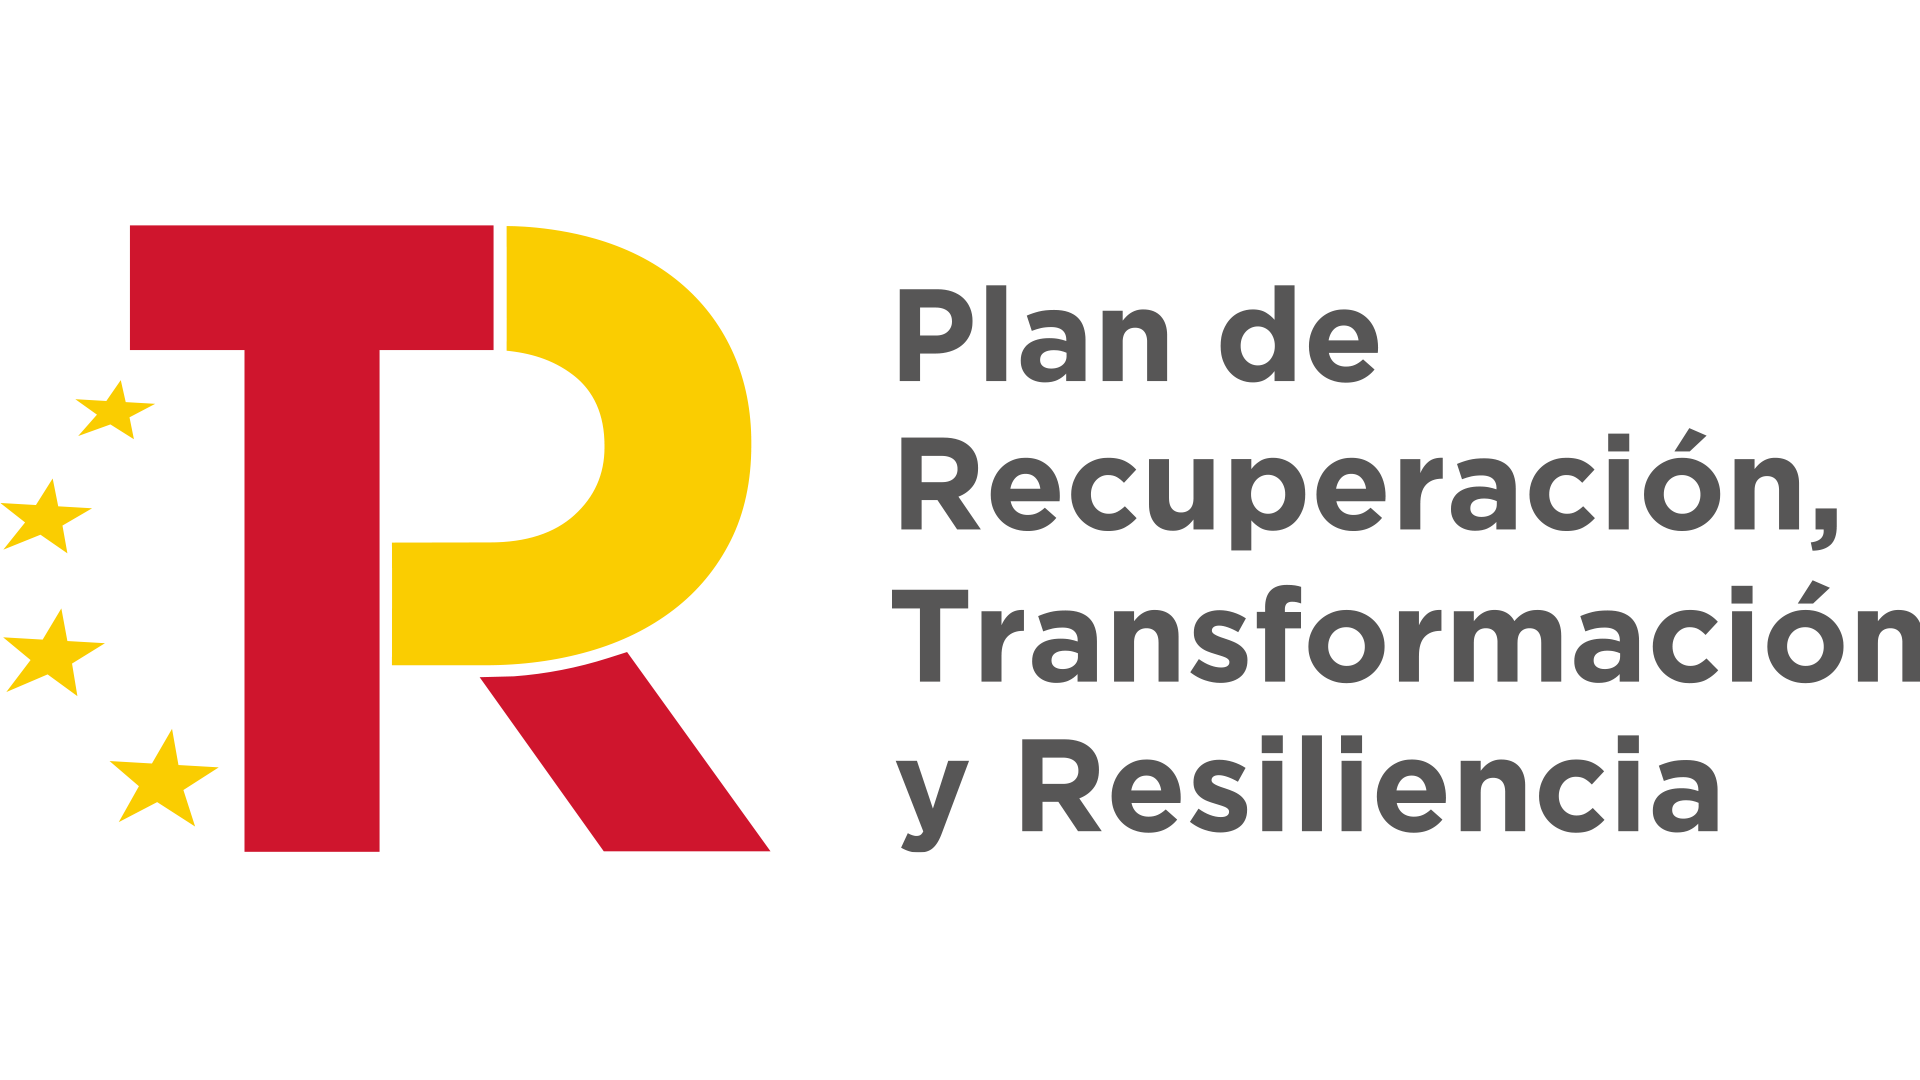 Plan de Recuperación y Resiliencia